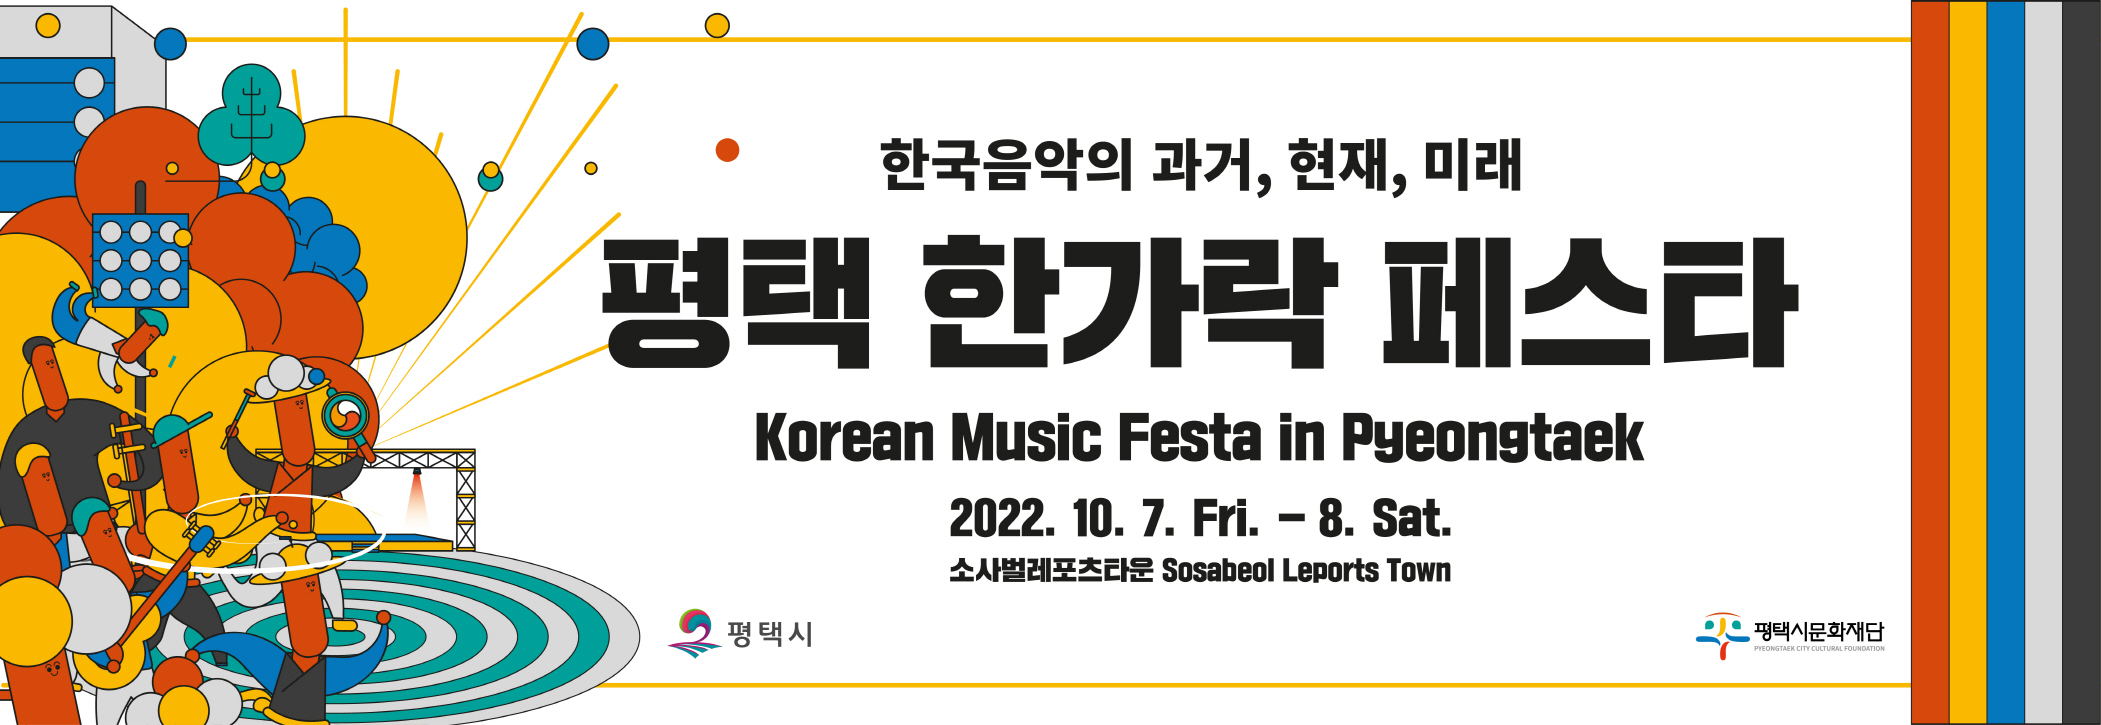 한국음악의 과거, 현재, 미래
평택한가락페스타
Korean Music Festa in Pyeingtaek
2022.10.7.Fri.-8.Sat.
소사벌레포츠타운 Sosabeol Leports Town
평택시
평택시문화재단